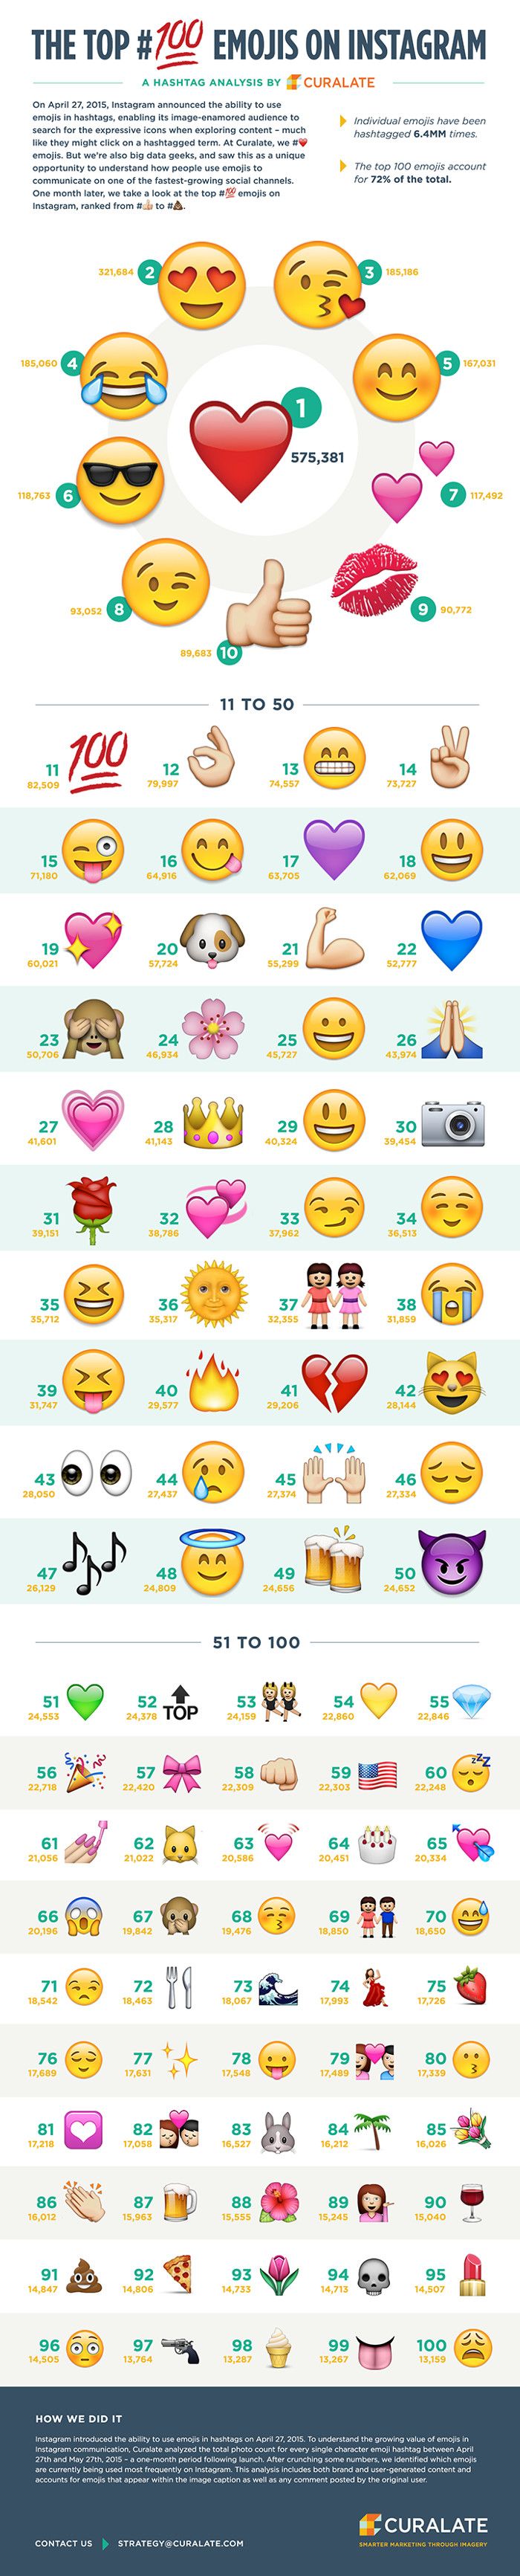 Top 100 Emojis on Instagram